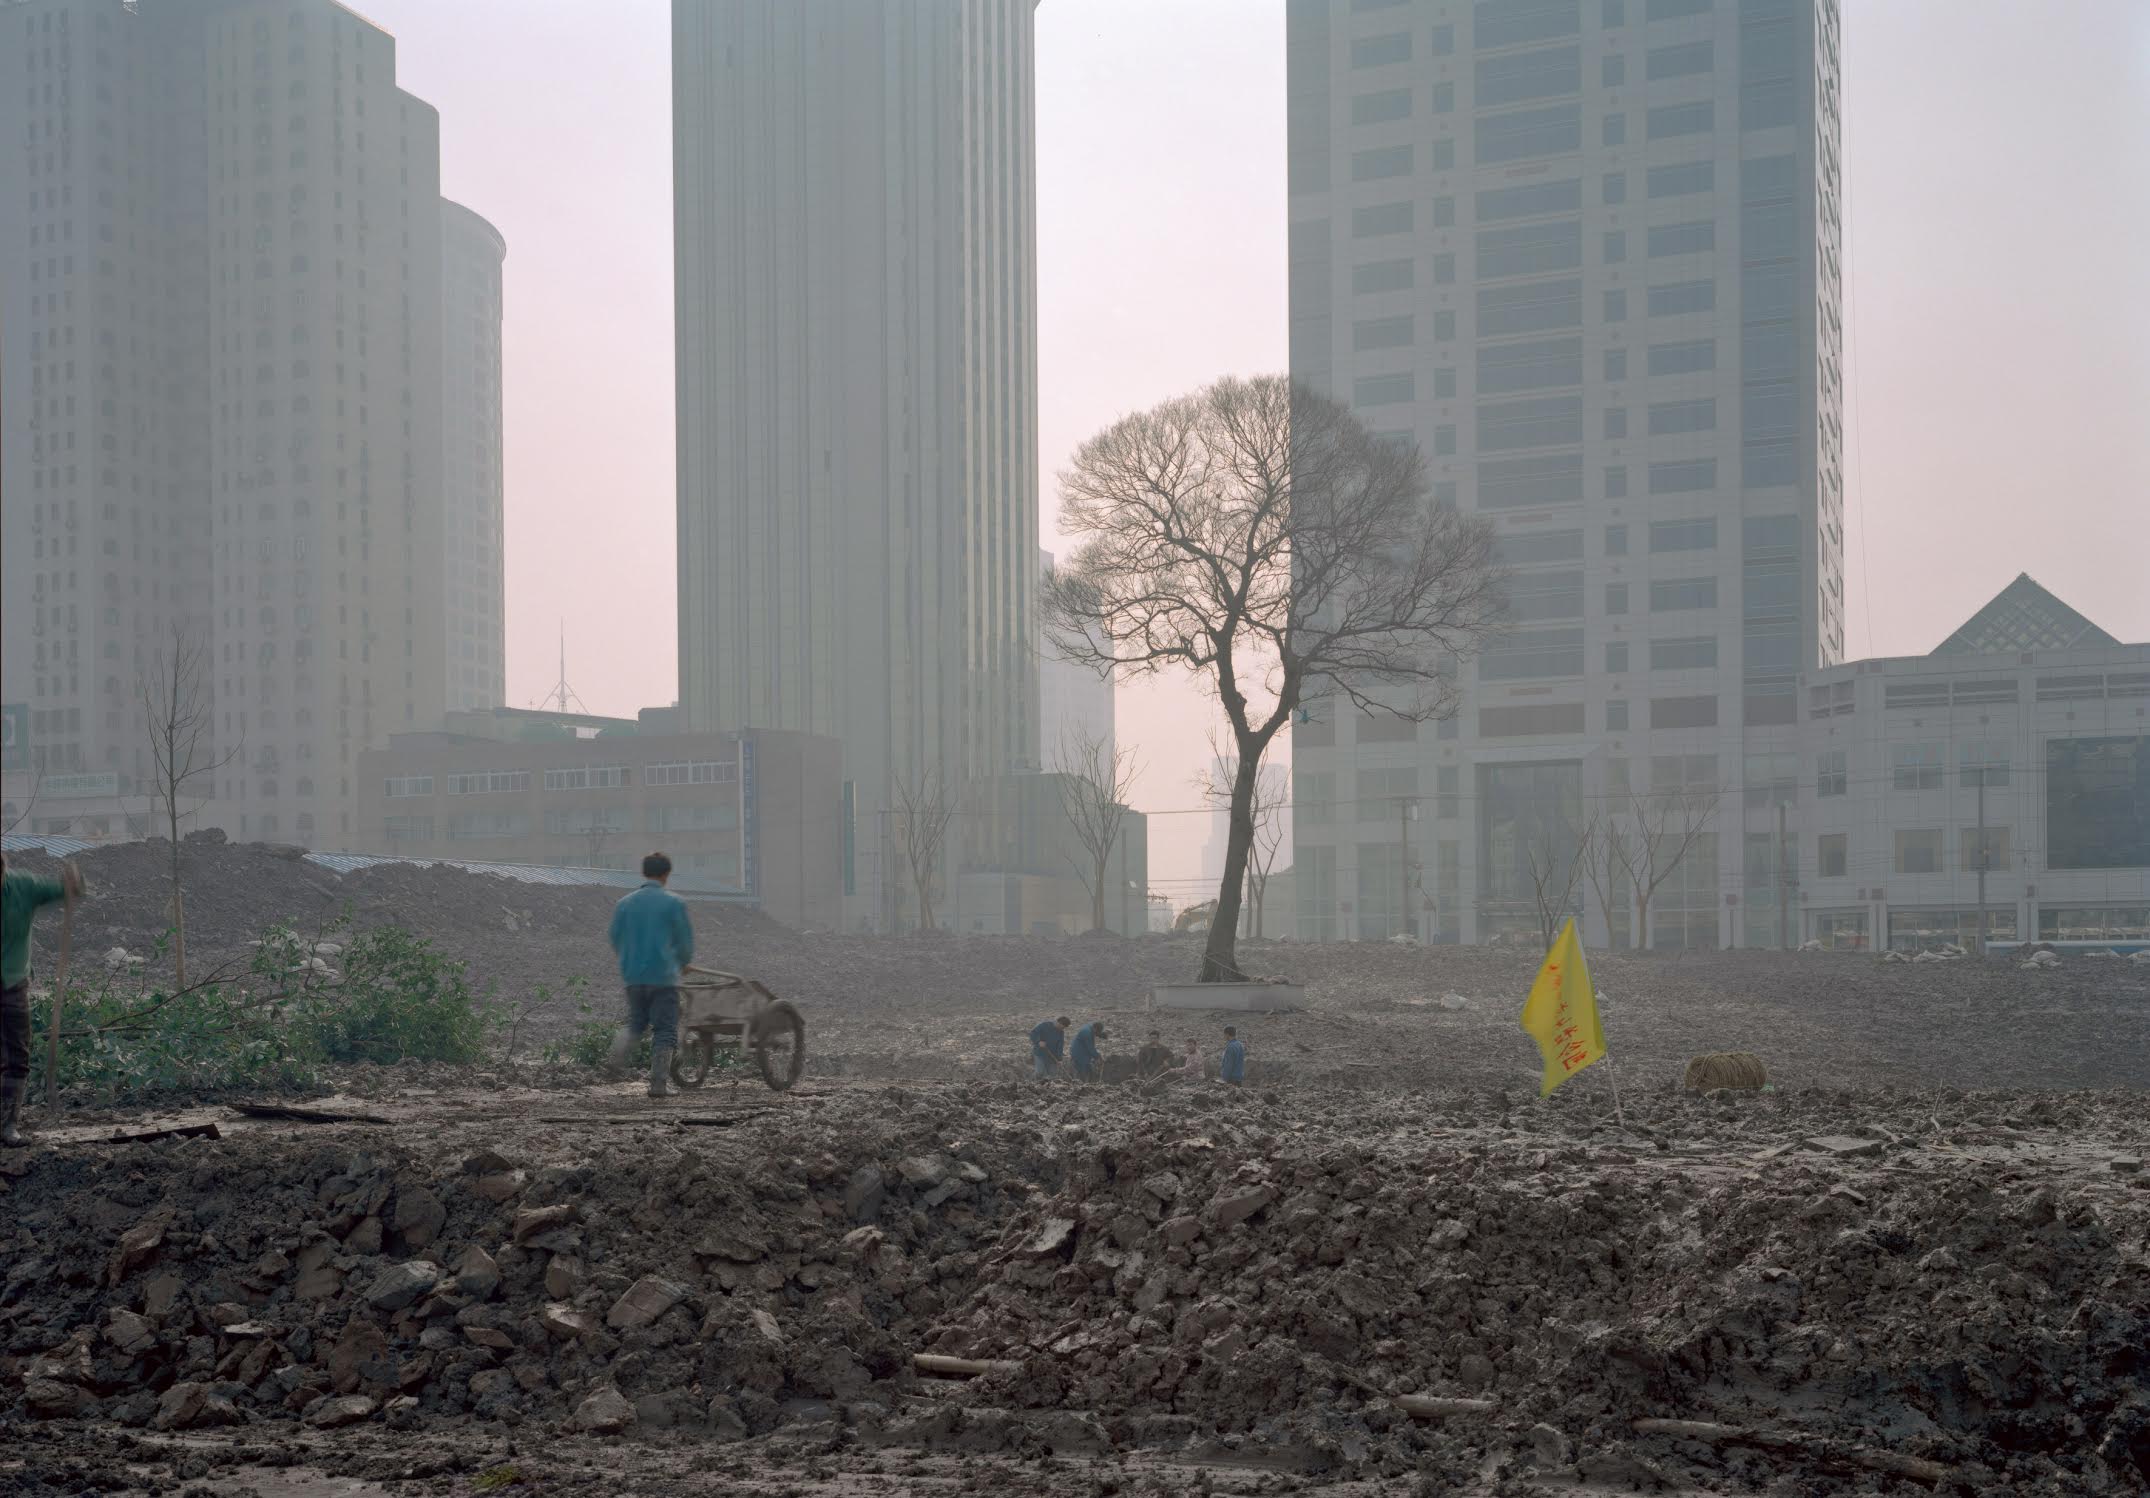 Lucas Jodogne, Park Construction, Shanghai, 2001. Image © Lucas Jodogne.